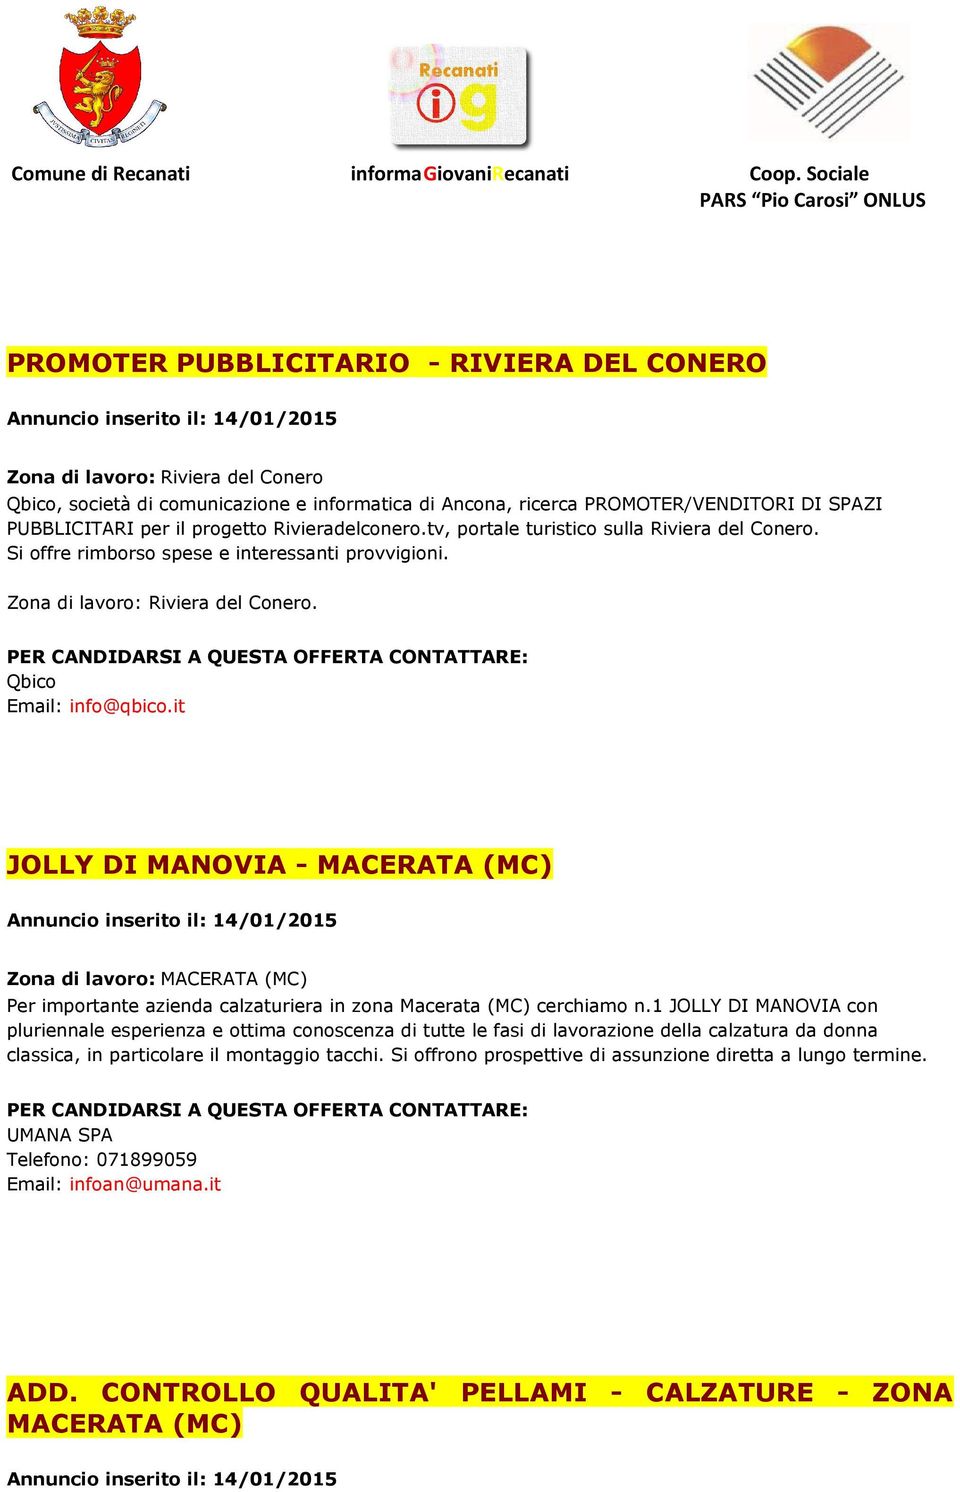 Qbico Email: info@qbico.it JOLLY DI MANOVIA - MACERATA (MC) Annuncio inserito il: 14/01/2015 Zona di lavoro: MACERATA (MC) Per importante azienda calzaturiera in zona Macerata (MC) cerchiamo n.